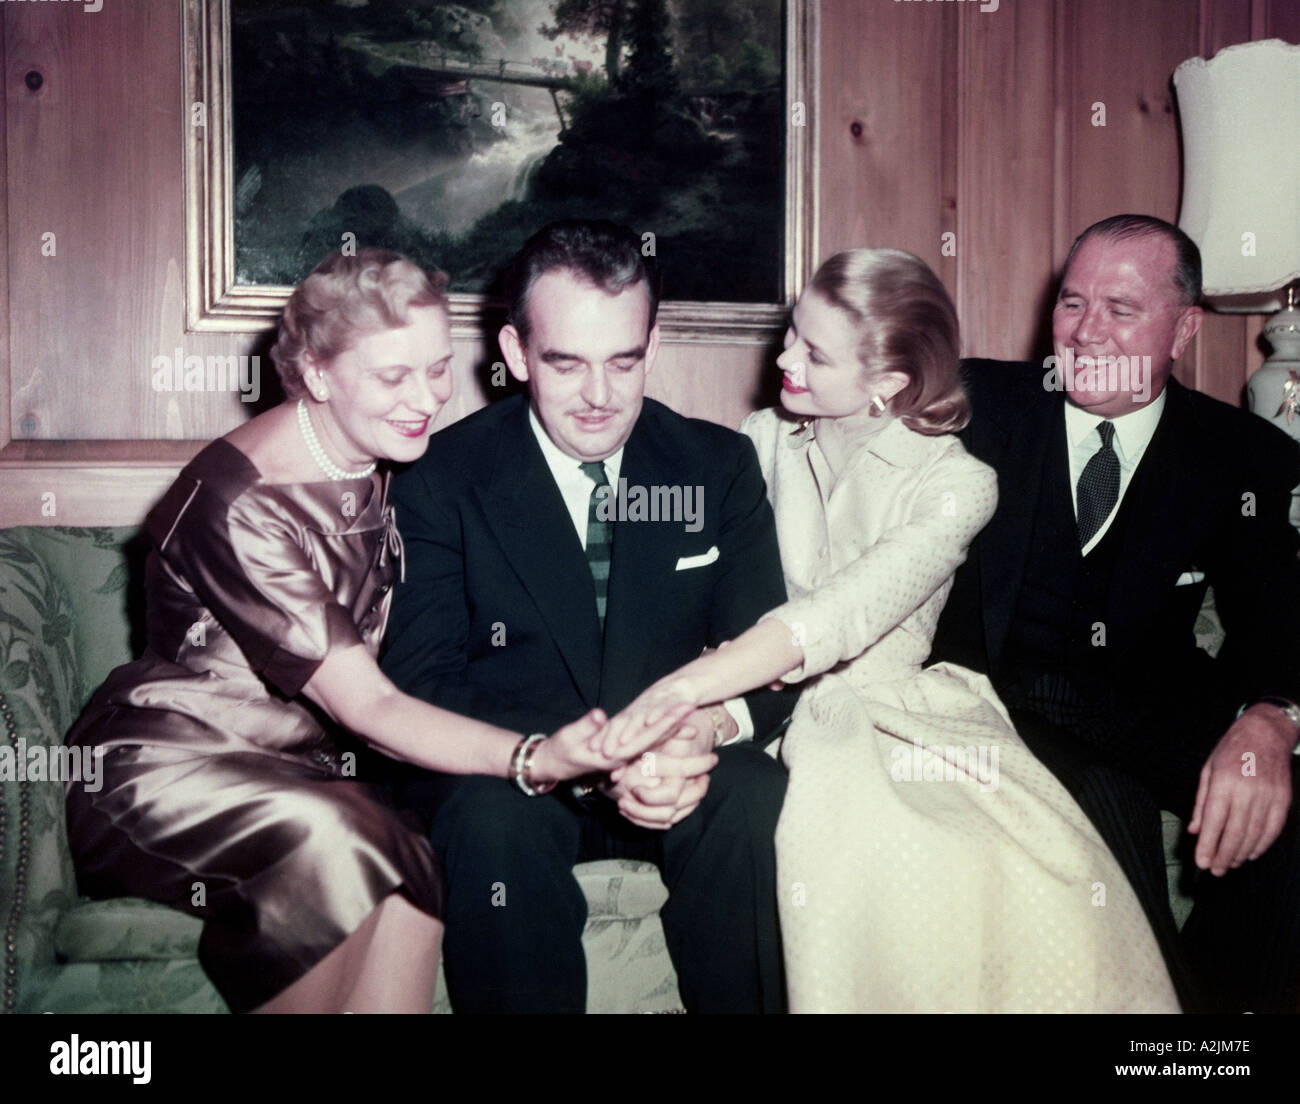 GRACE KELLY mostra il suo anello di fidanzamento dal principe Ranier ai  suoi genitori Foto stock - Alamy